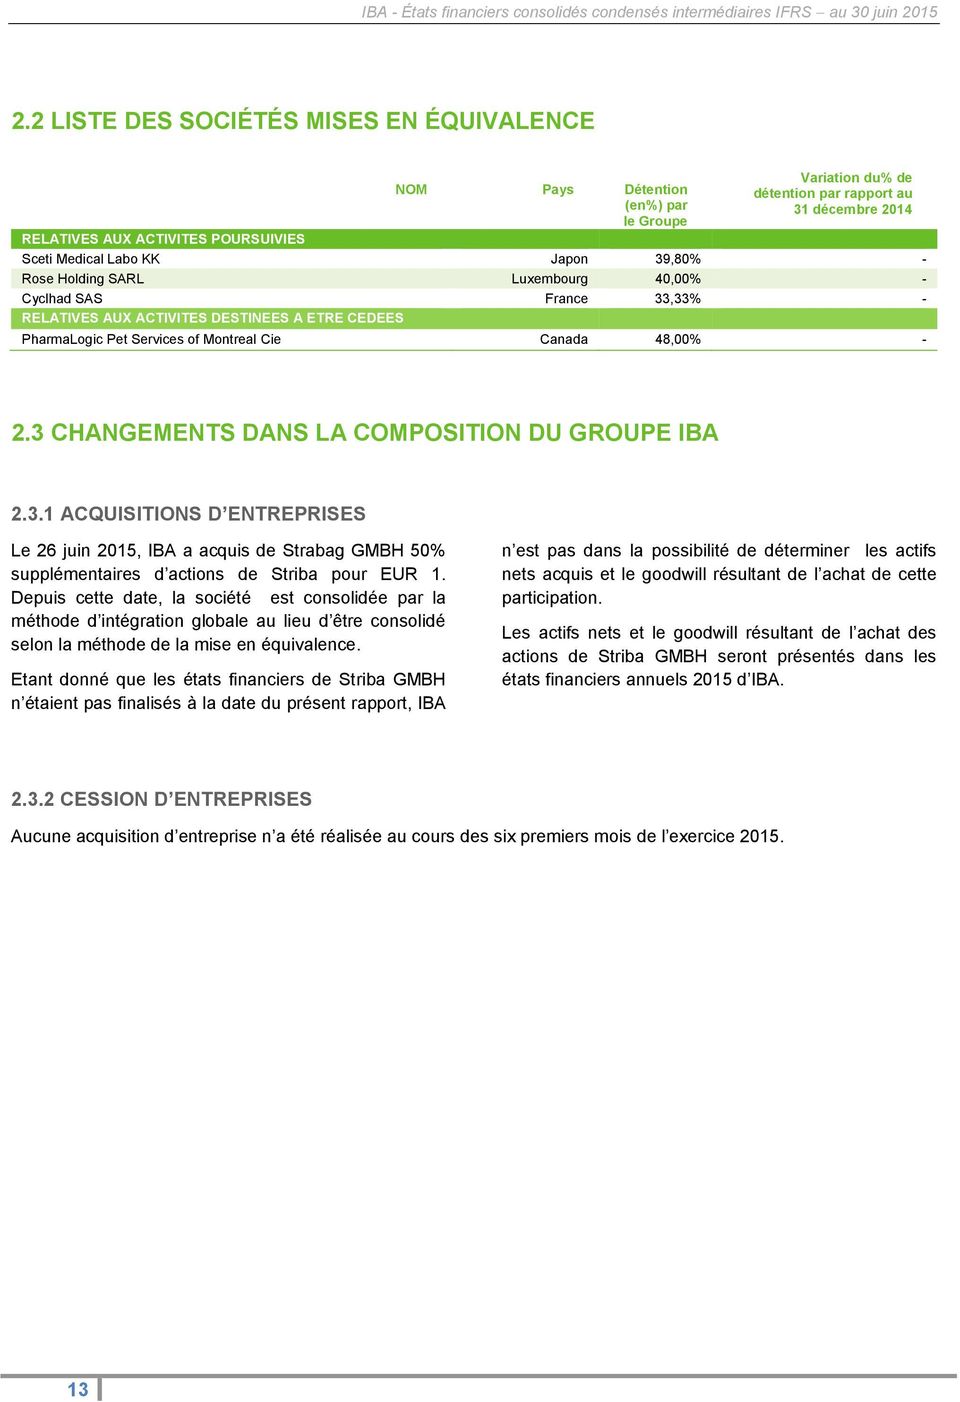 3 CHANGEMENTS DANS LA COMPOSITION DU GROUPE IBA 2.3.1 ACQUISITIONS D ENTREPRISES Le 26 juin 2015, IBA a acquis de Strabag GMBH 50% supplémentaires d actions de Striba pour EUR 1.